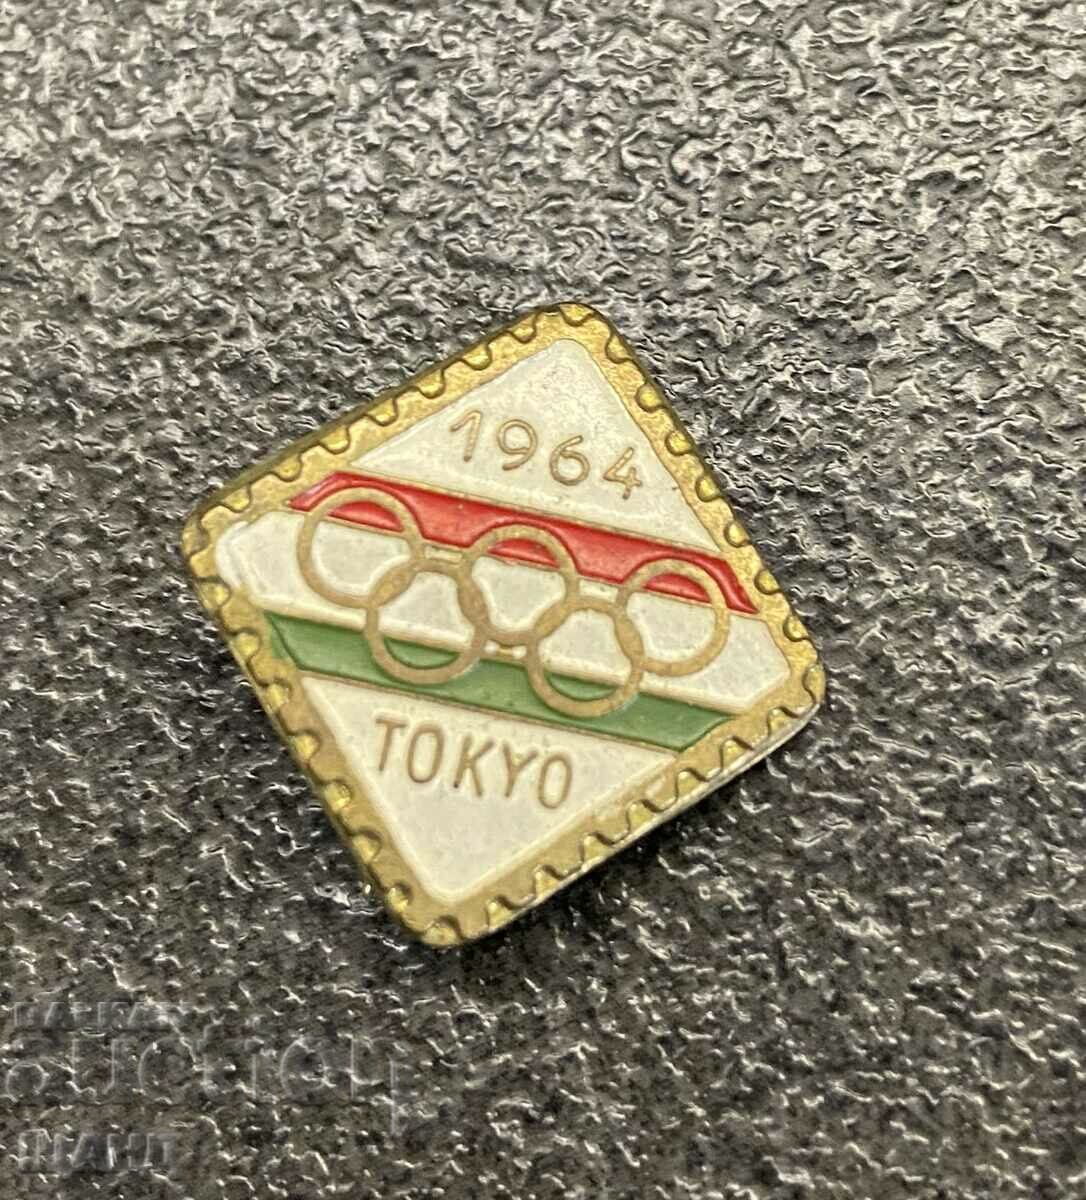 Vechi semn de ecuson Jocurile Olimpice Tokyo Japonia 1964